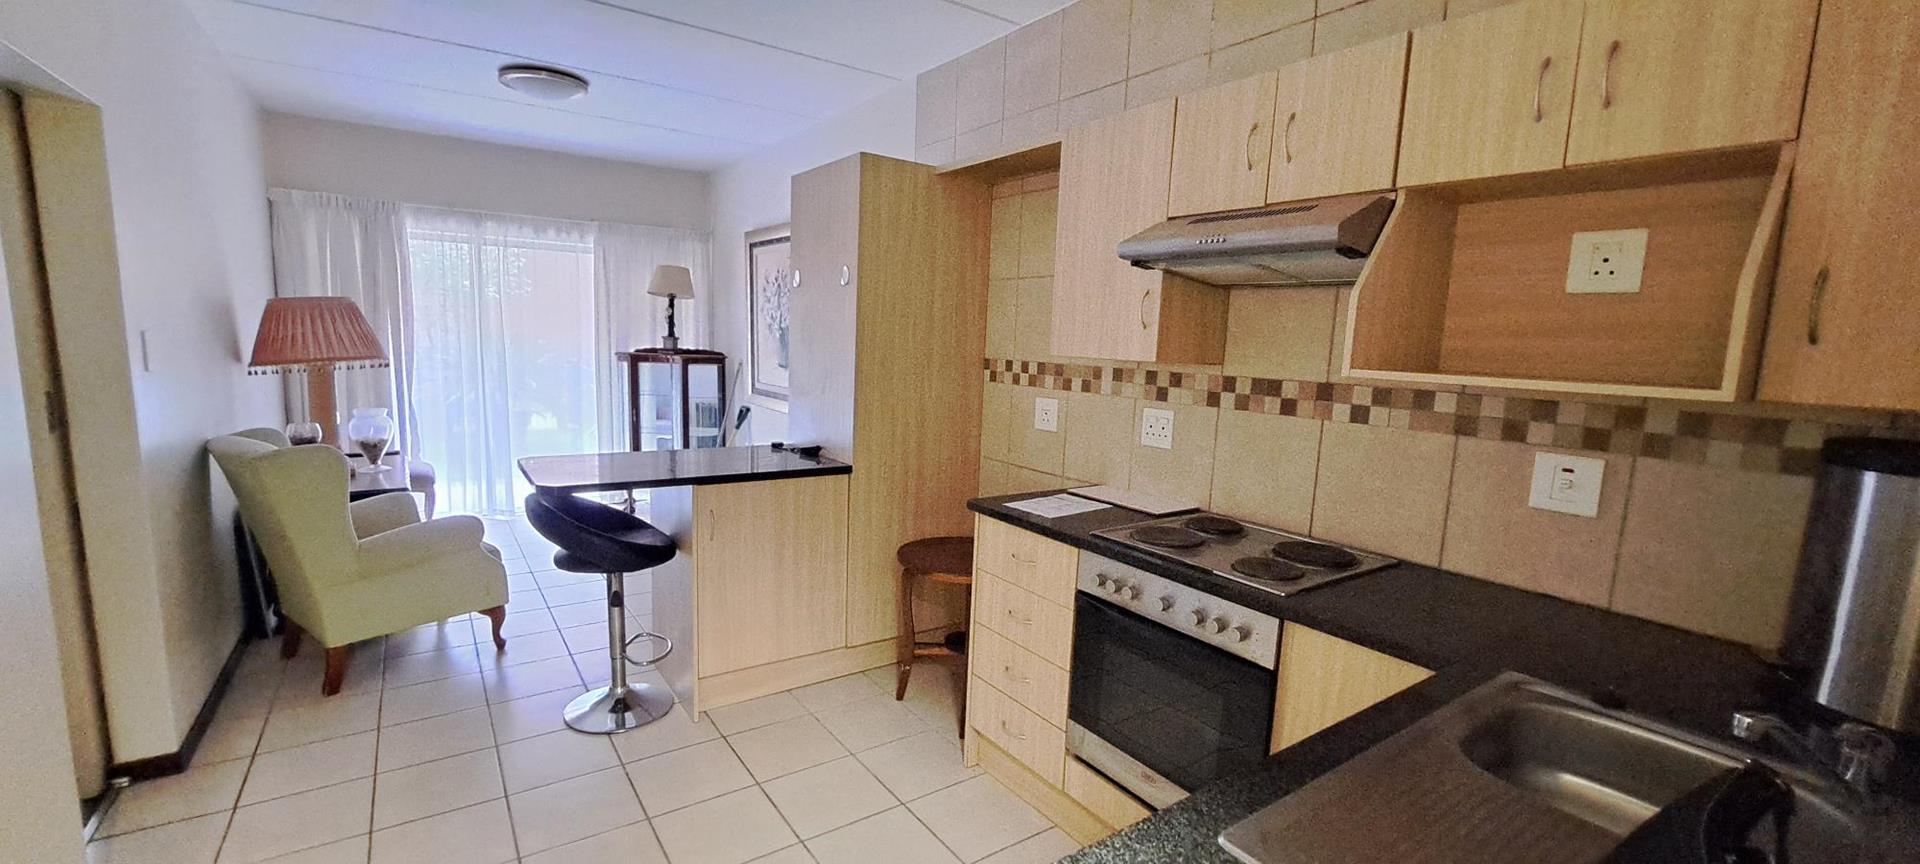 1 Bedroom Property for Sale in Randburg Gauteng